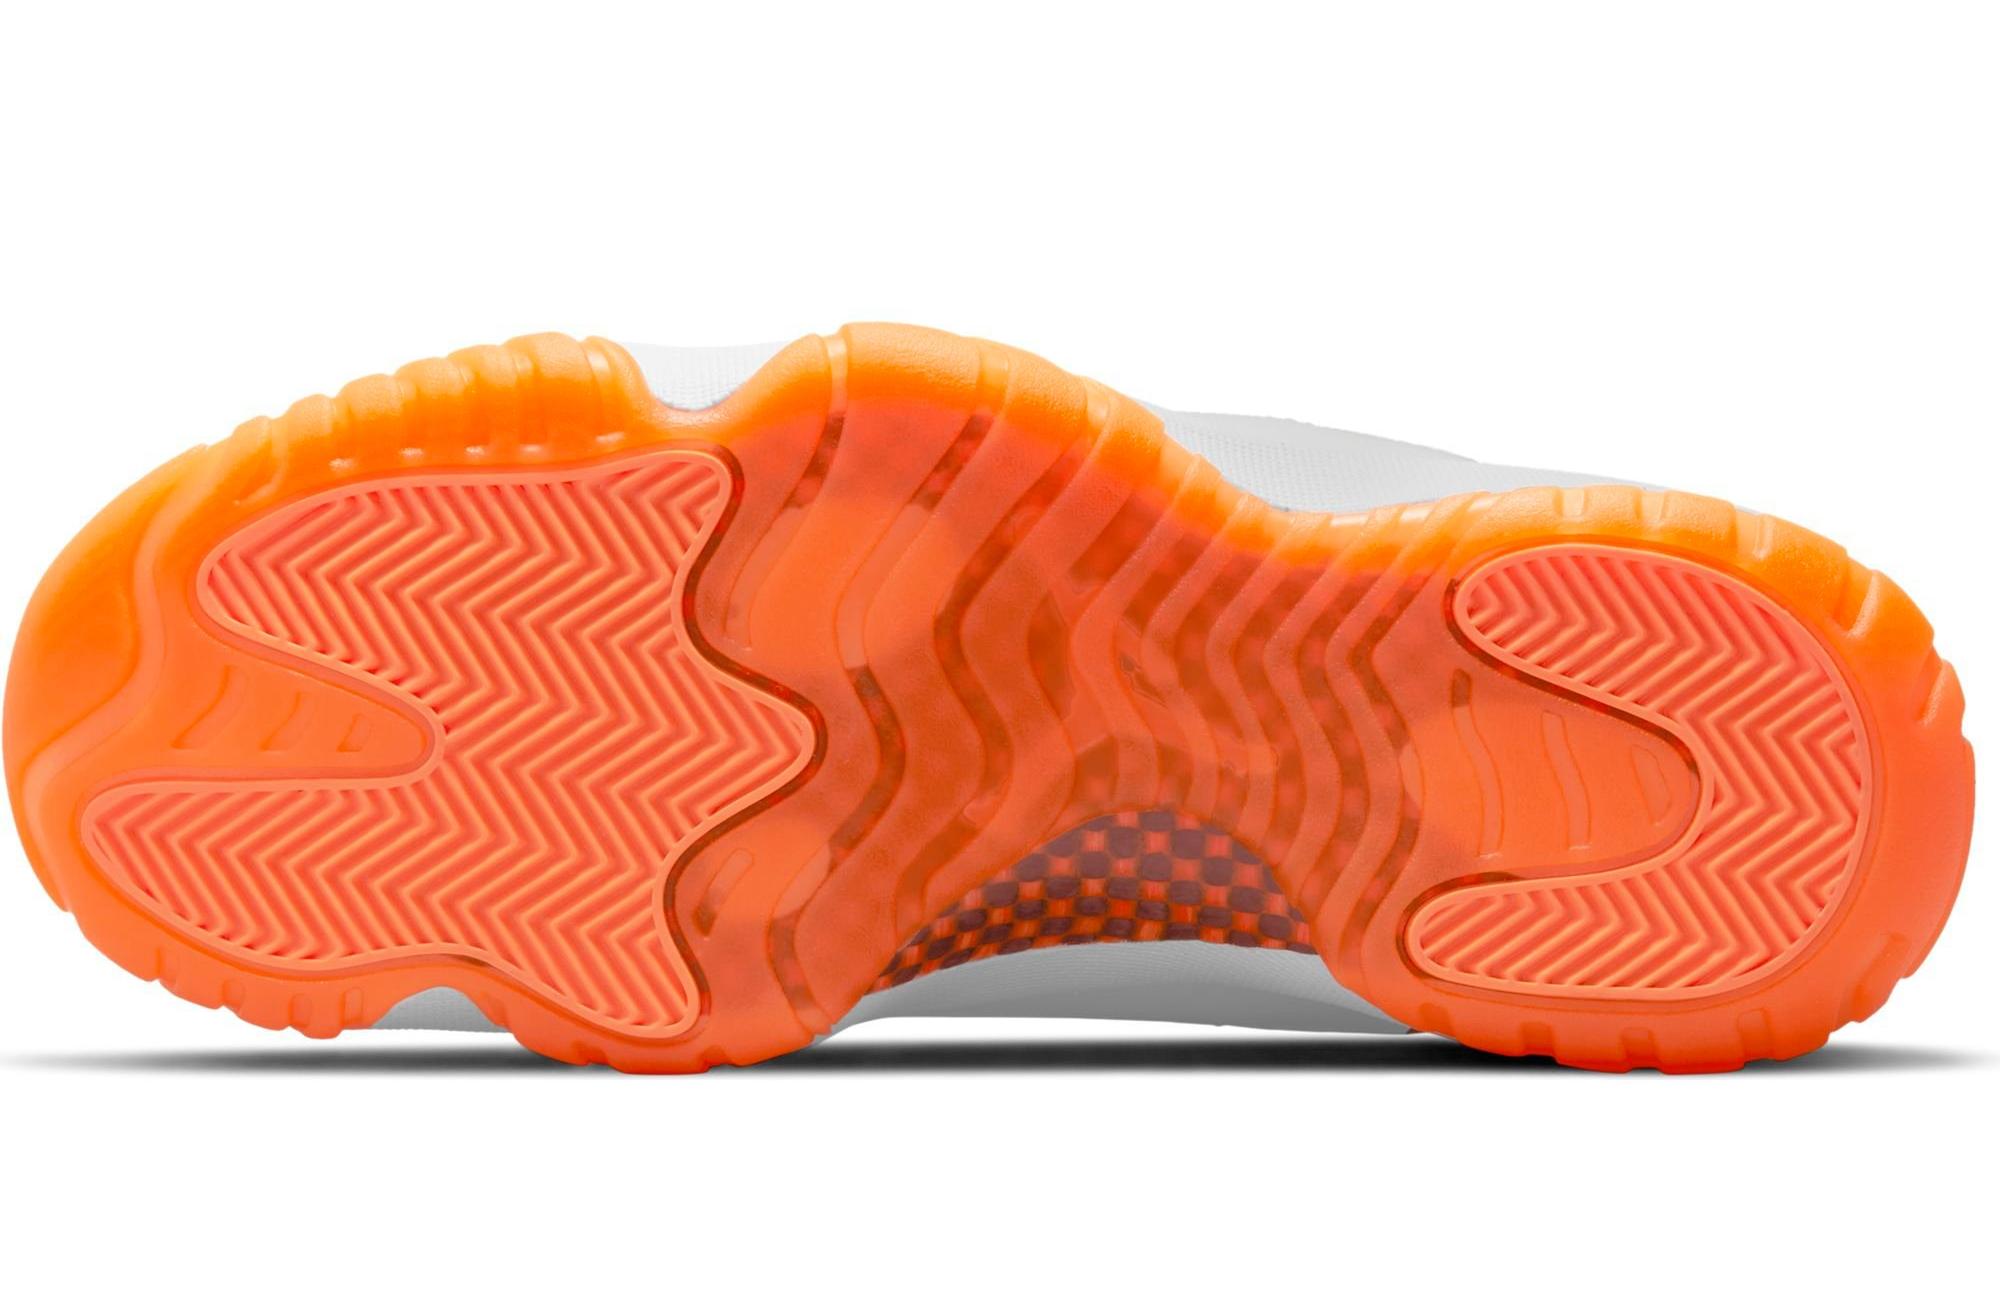 DS W Nike Air Jordan 11 Retro Low Citrus sz8.5Y OG Supreme cond